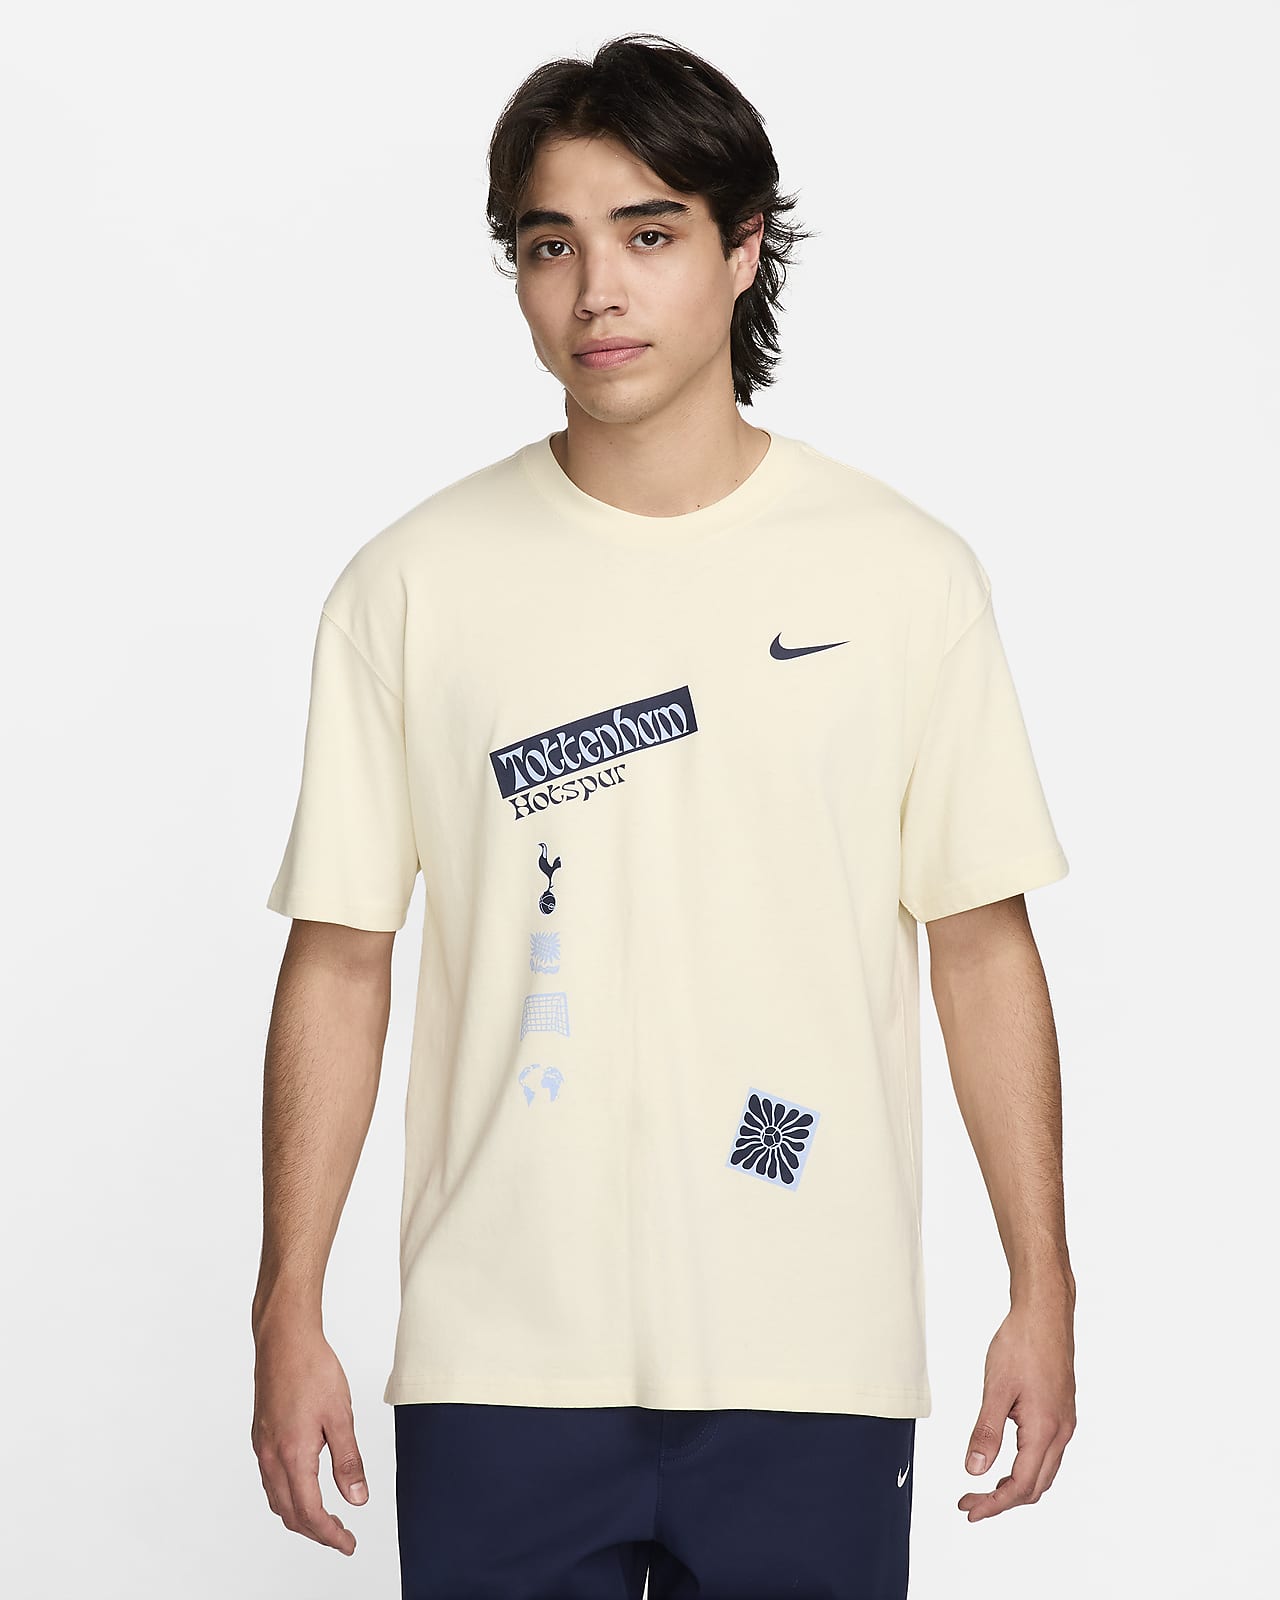 Tottenham Hotspur Men's Nike Football Max90 T-Shirt